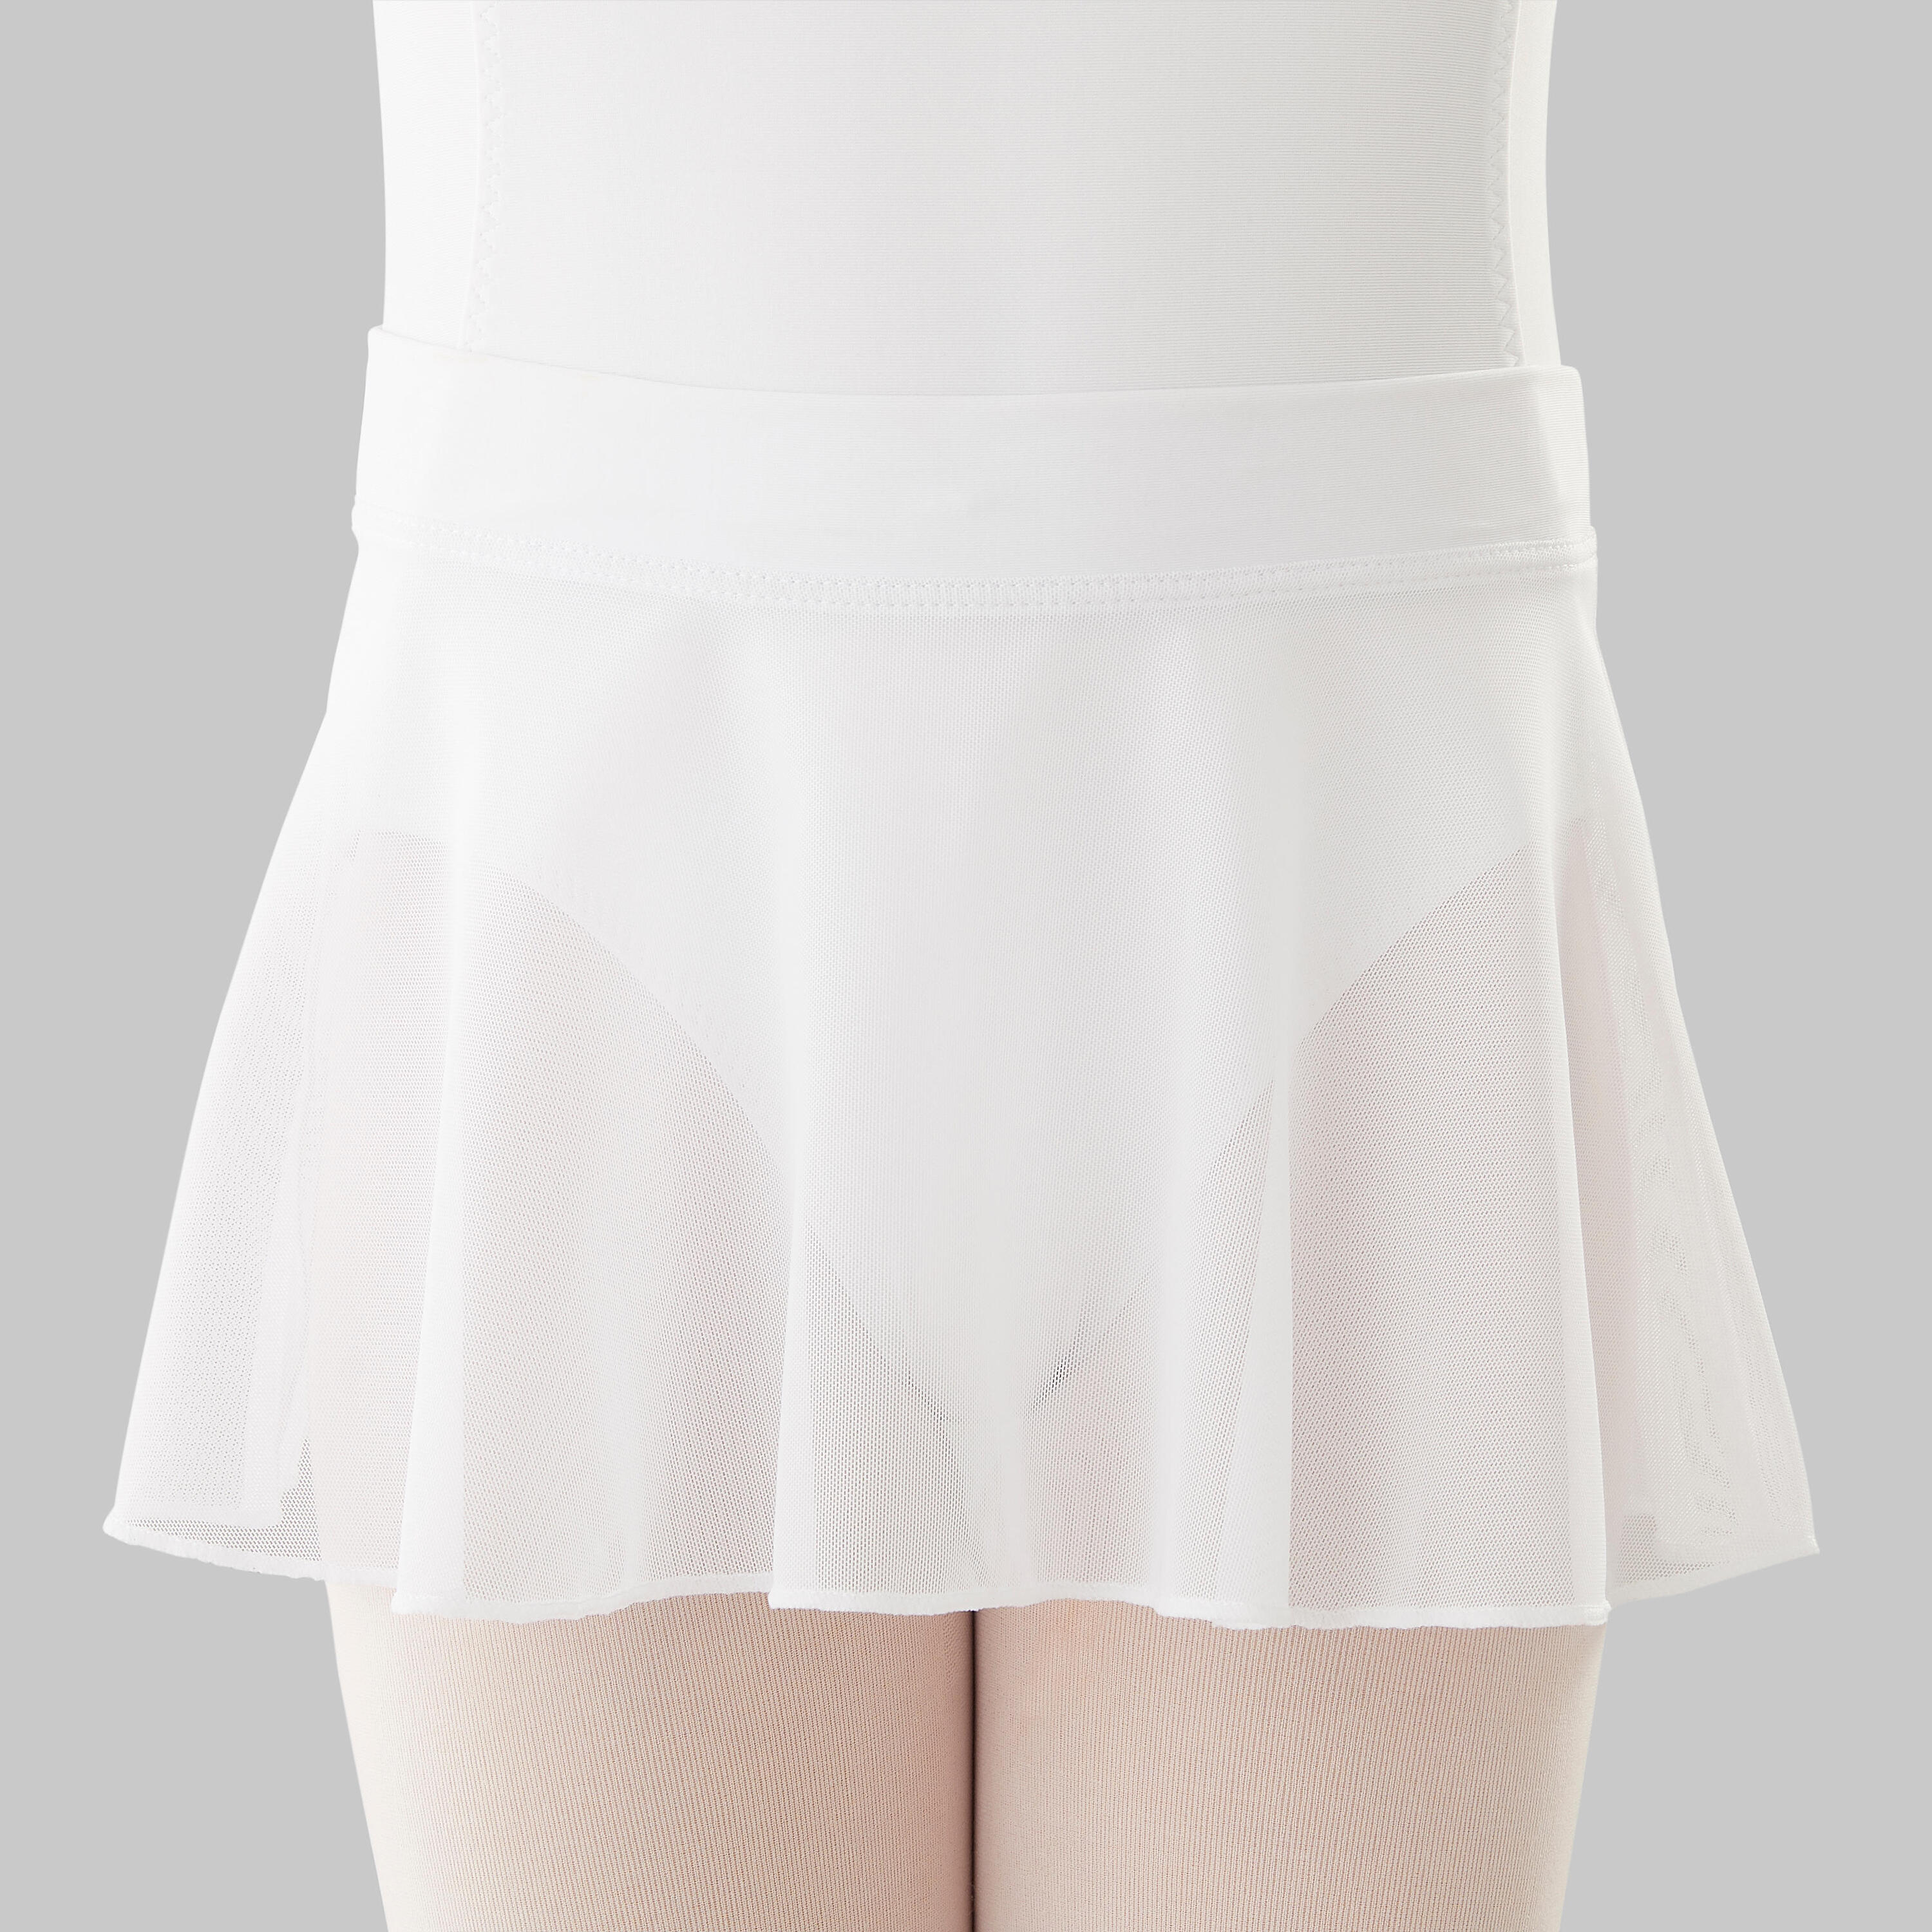 STAREVER Girls' Voile Ballet Skirt - White